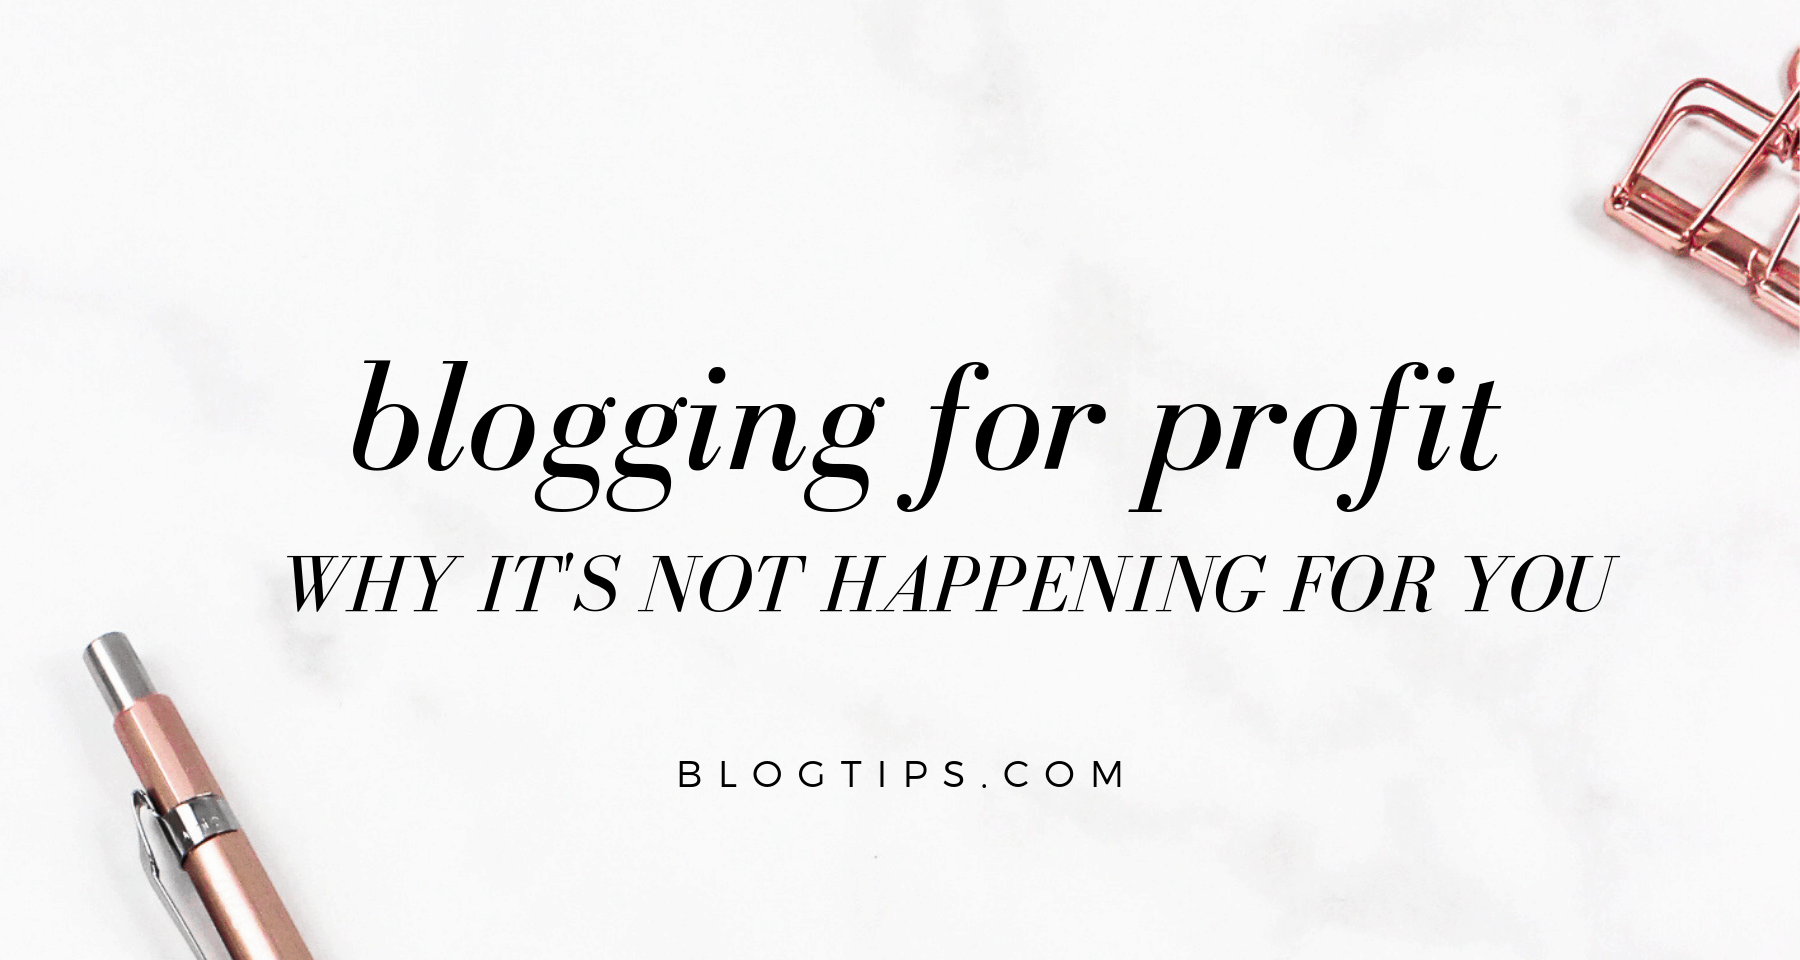 blogging for profit tips